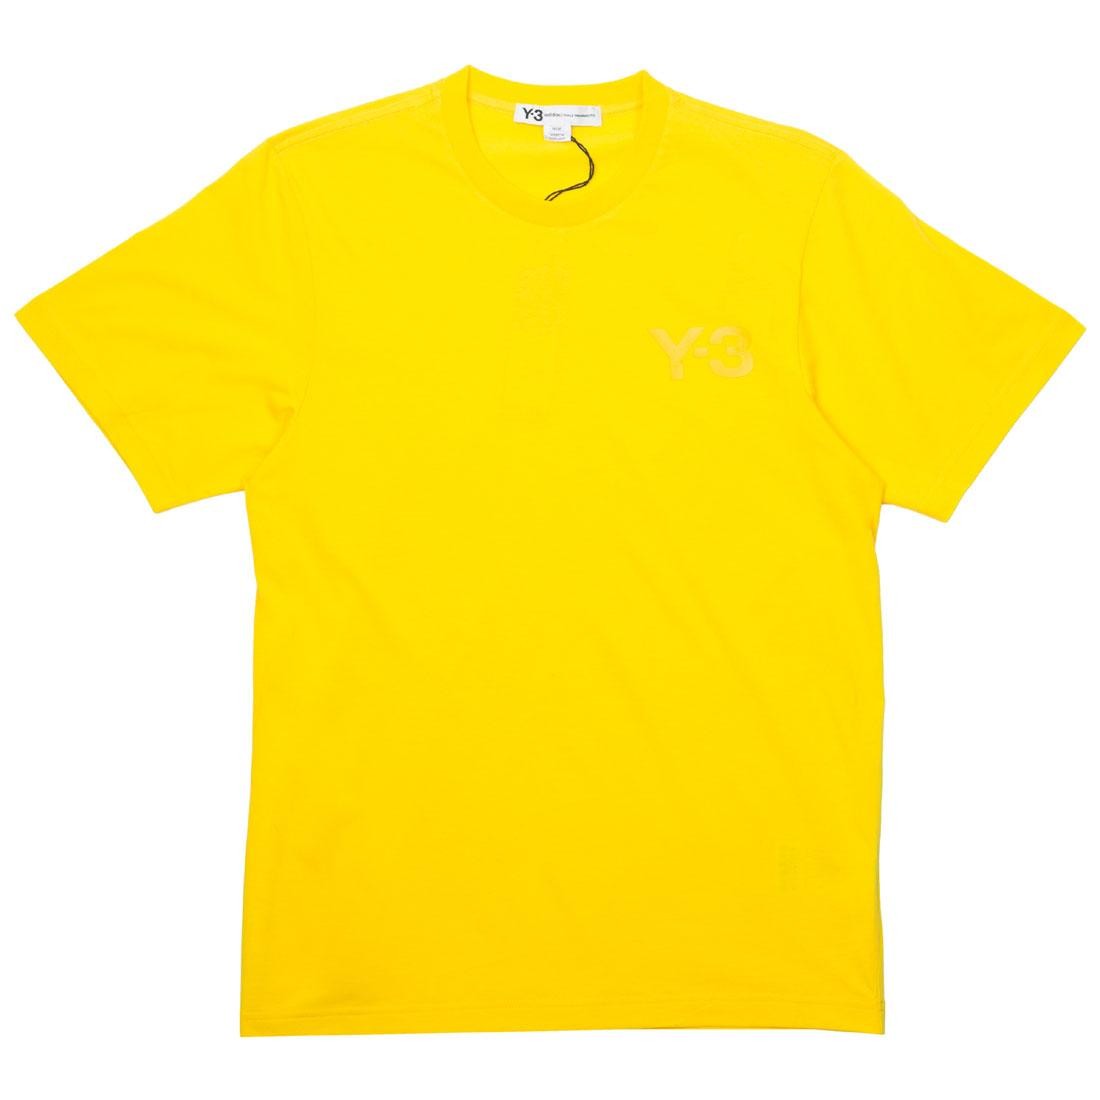 Adidas Y-3 Men Classic LF Short Sleeve Tee (yellow)